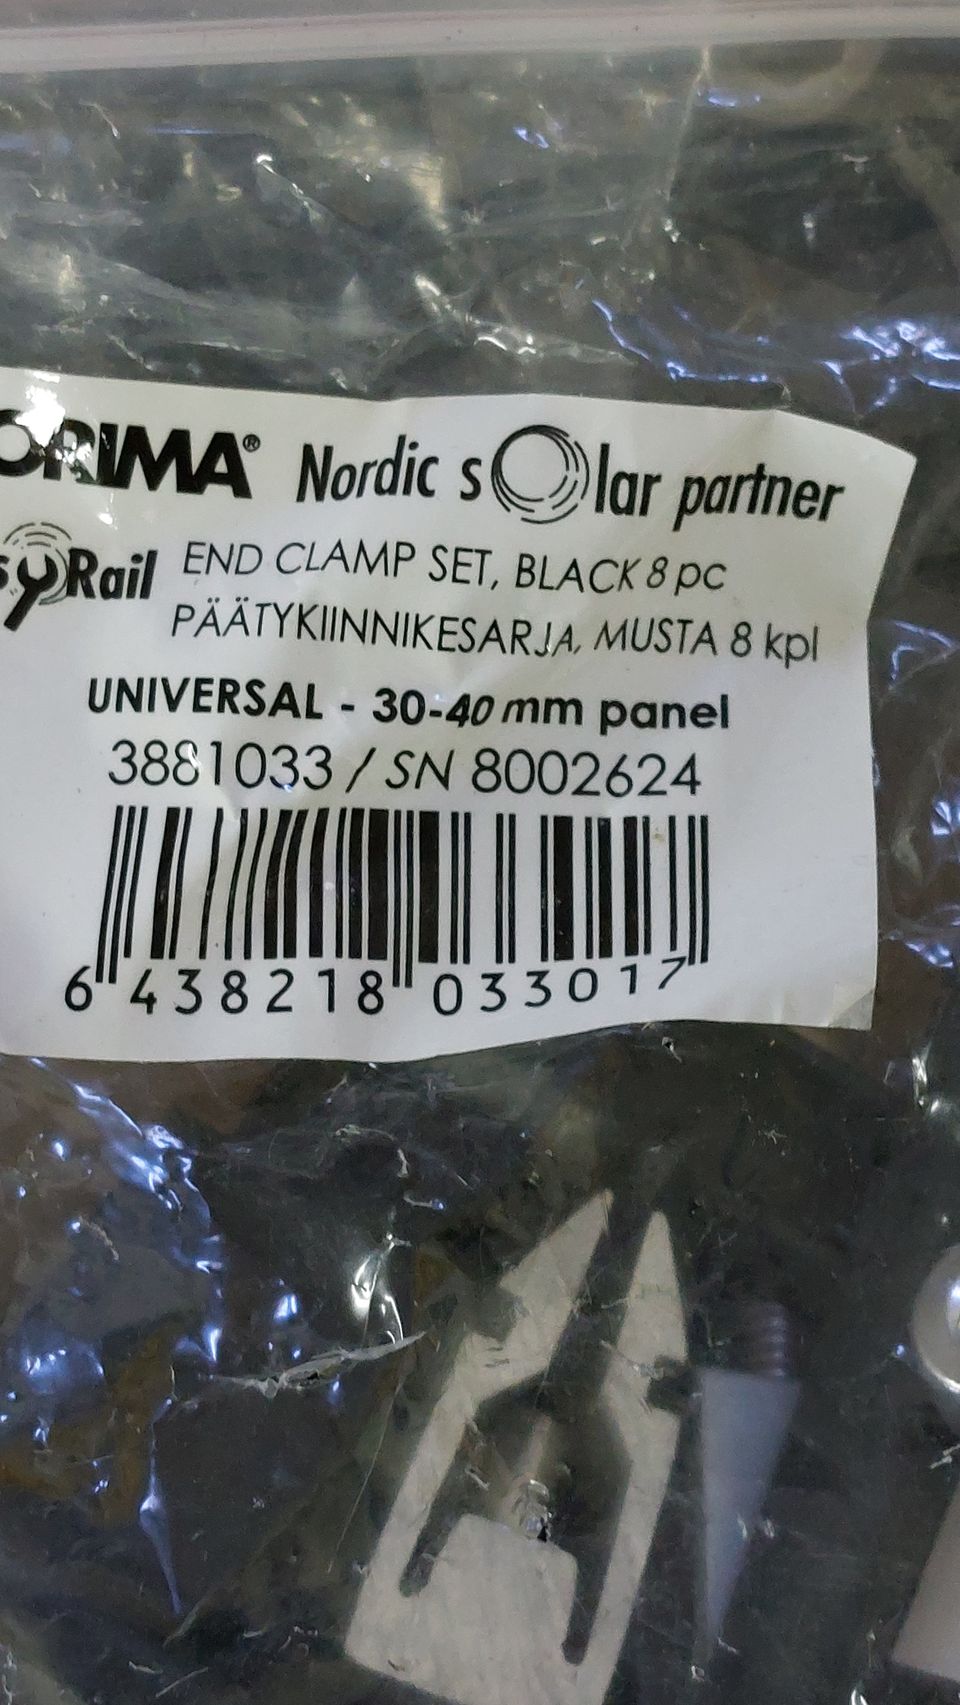 Orima aurinkopaneelien päätykiinnike, mustat, 30-40 mm paneeleille